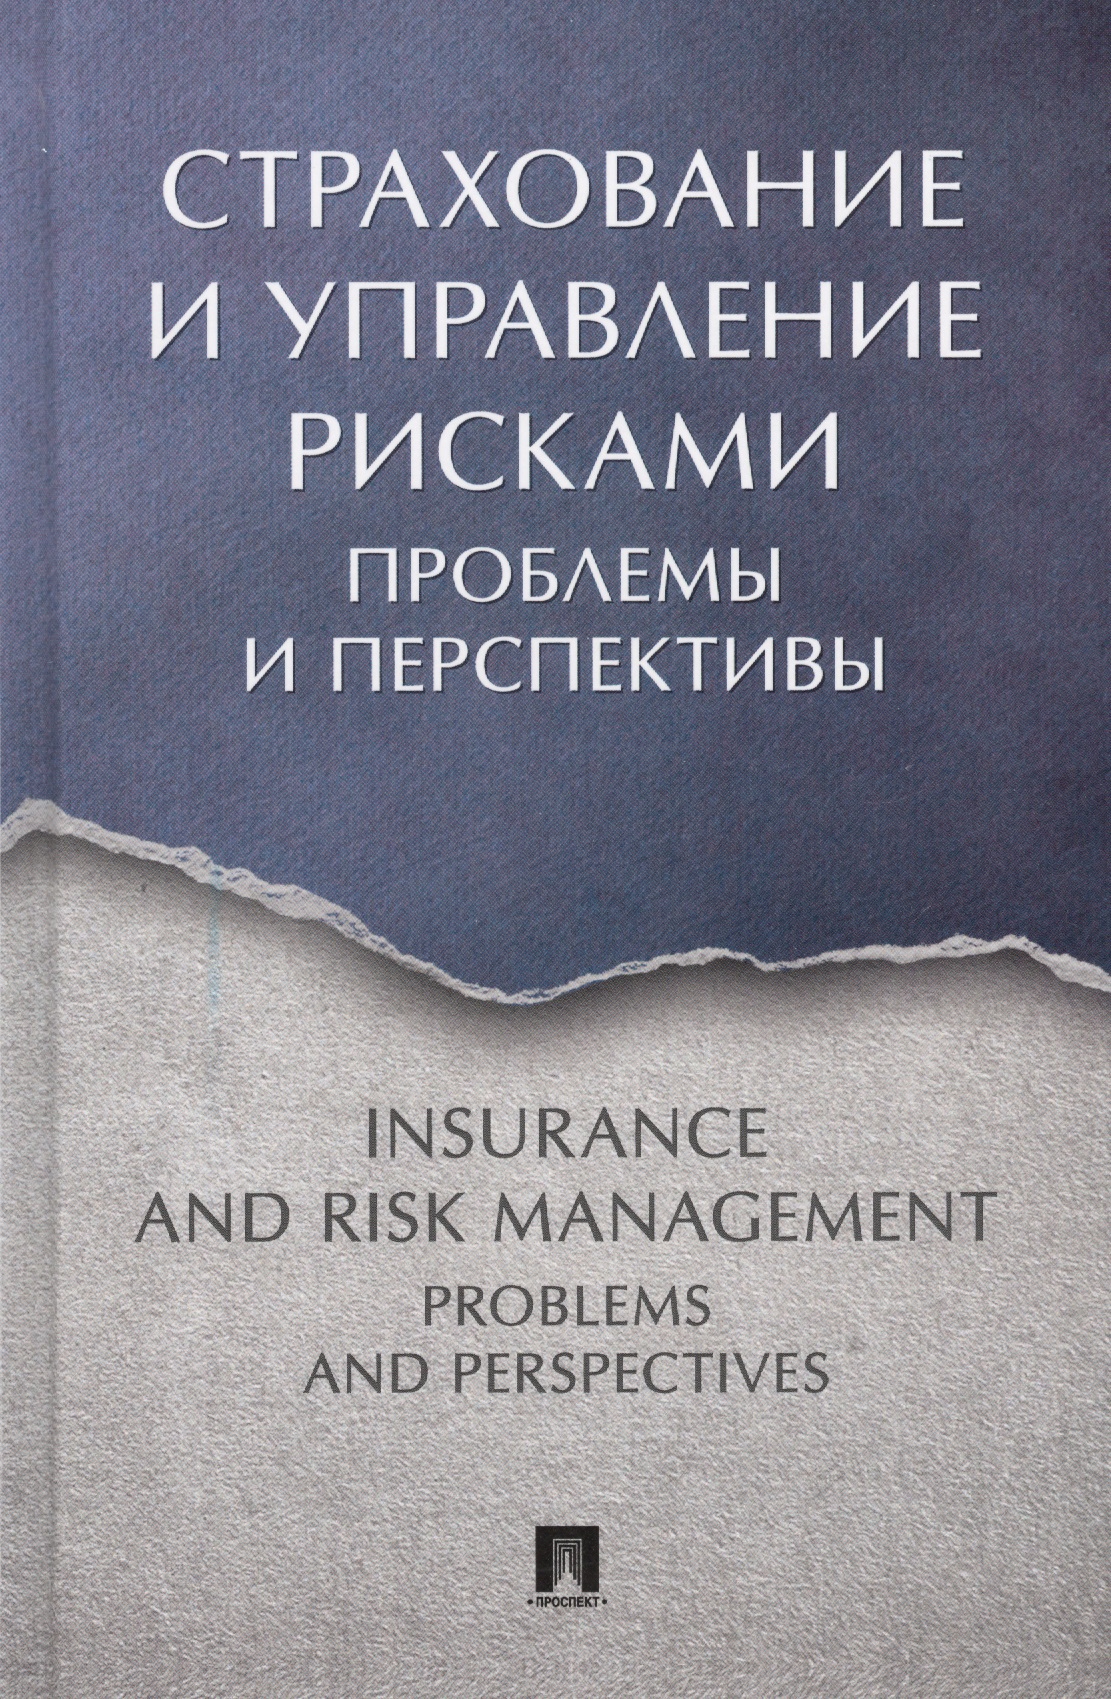 Белозерова С. А. - Страхование и управление рисками: проблемы и перспективы. Монография